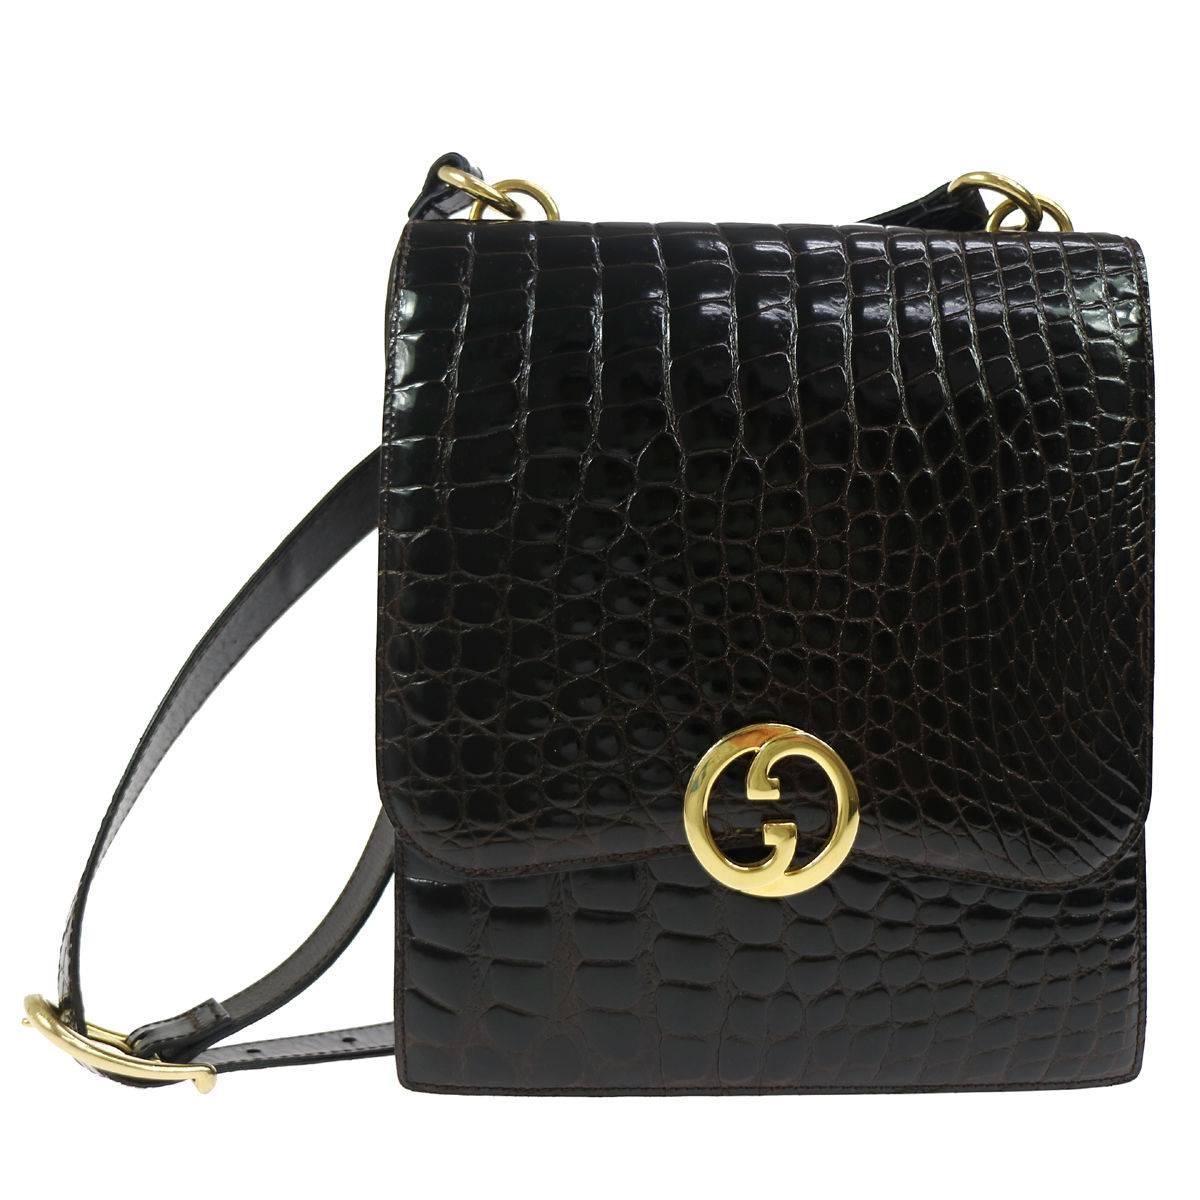 Gucci Vintage Croc Leather Gold GG Charm Evening Shoulder Flap Bag in Dust Bag